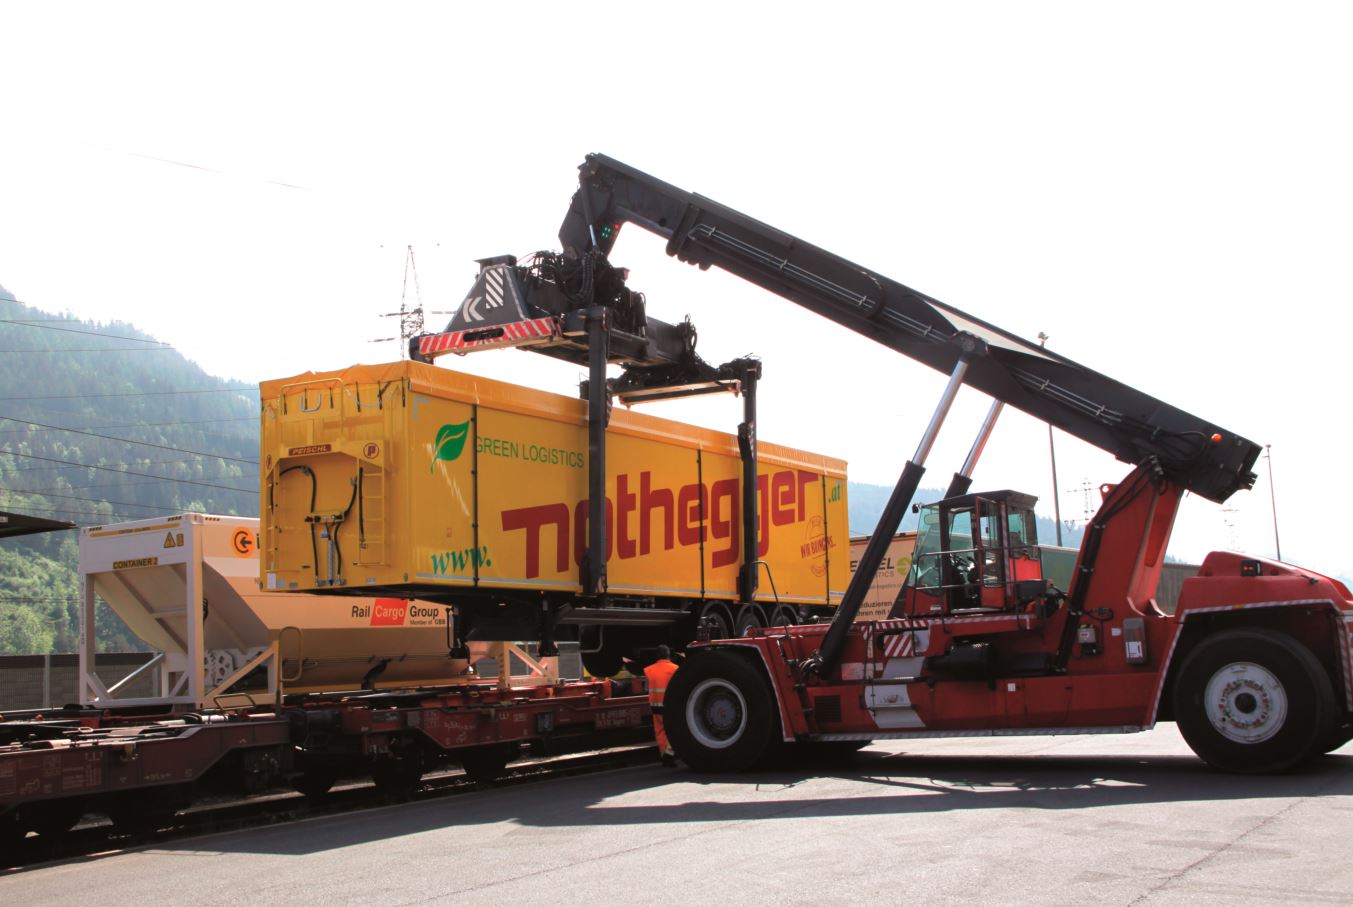 Nothegger Group launches intermodal bulk logistics service